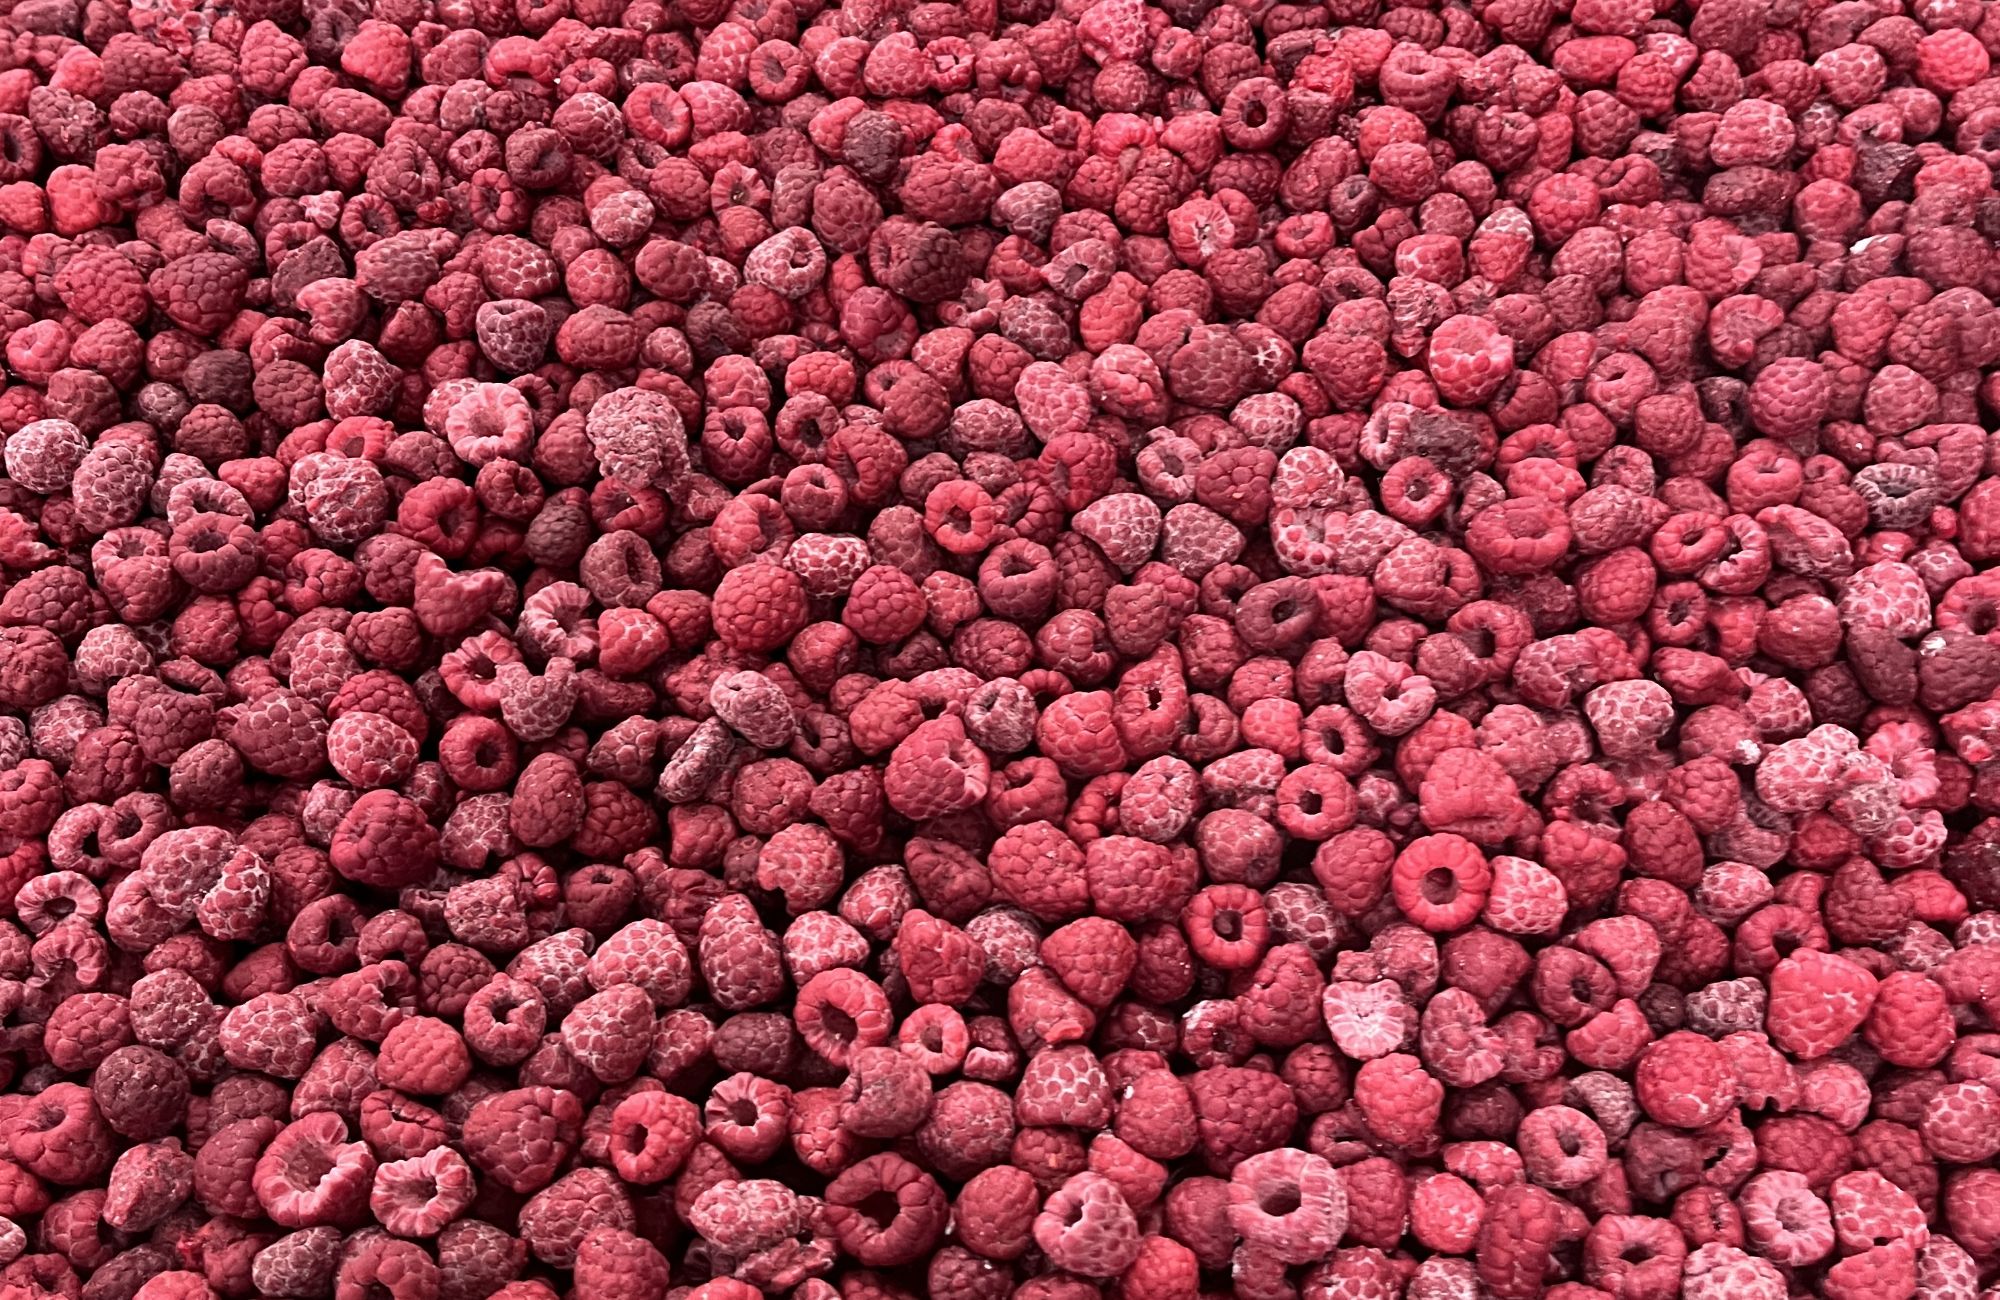 Frozen red raspberries